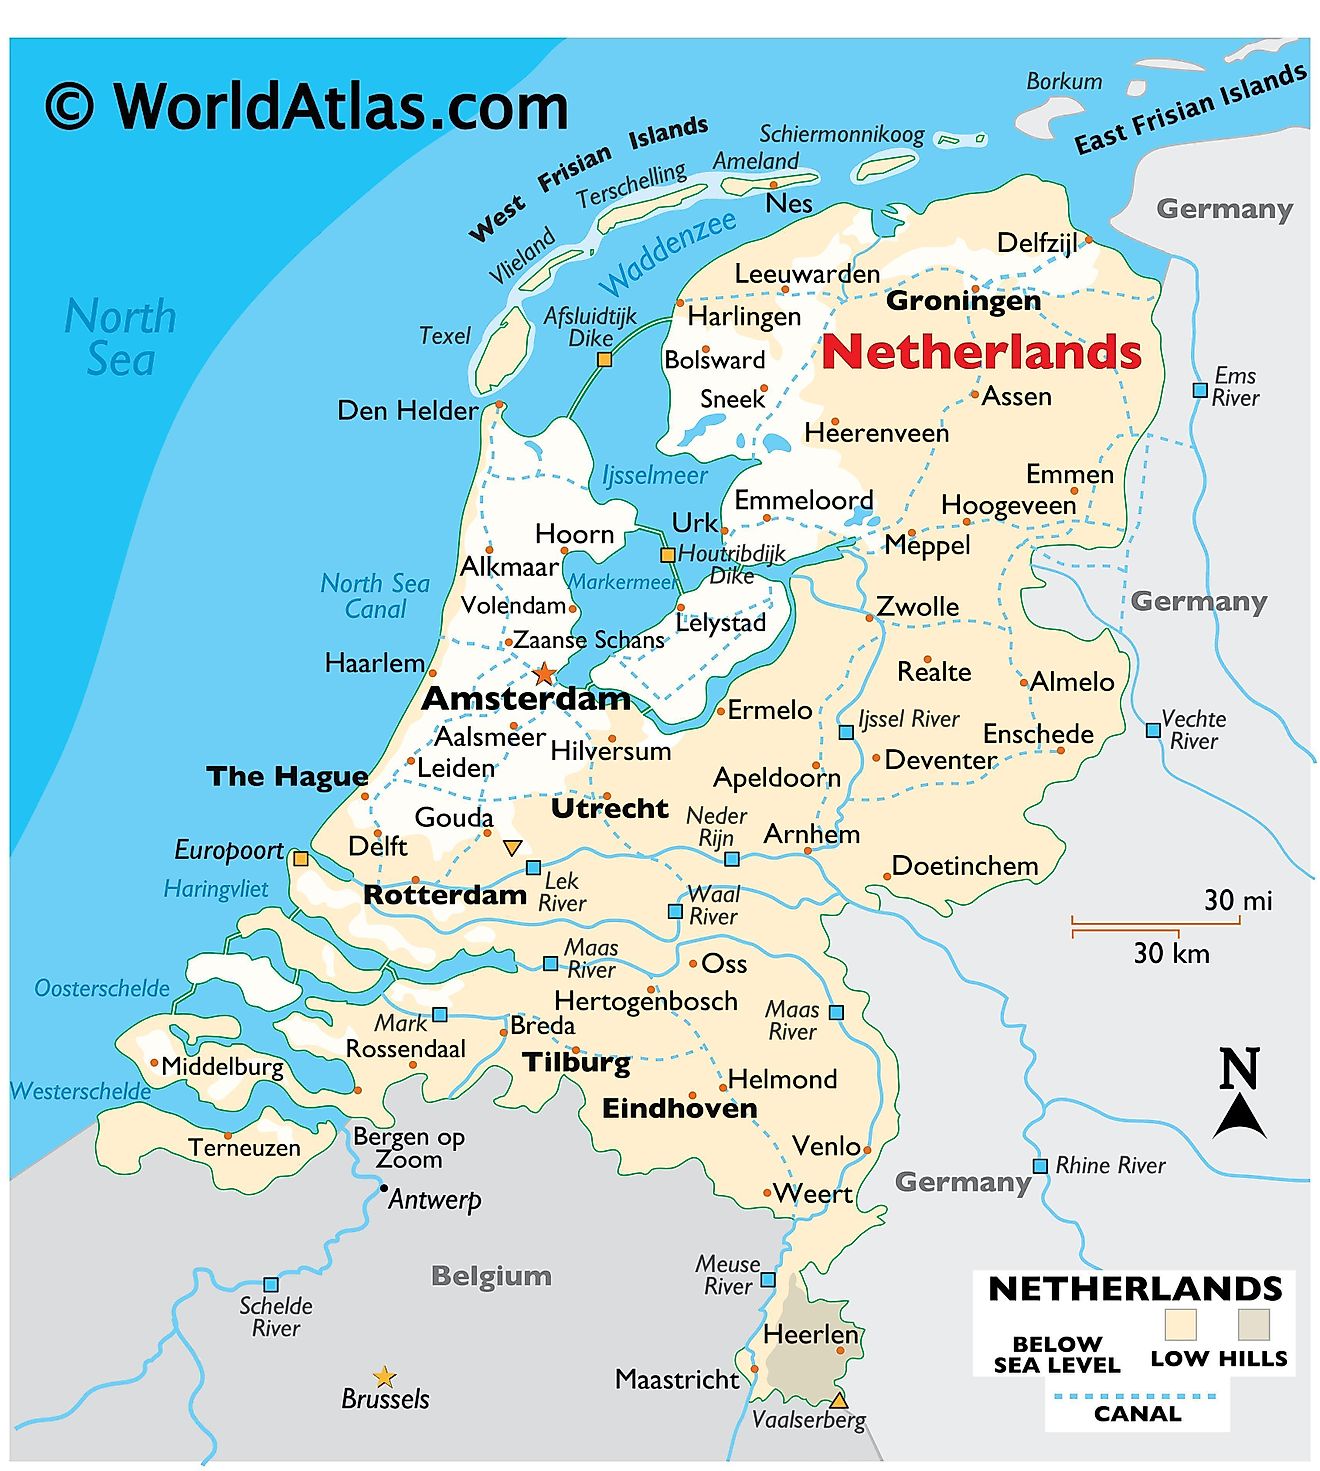 Physische kaart van Nederland met reliëf, internationale grenzen, grote rivieren, uiterste punten, belangrijke steden, eilanden, enz.